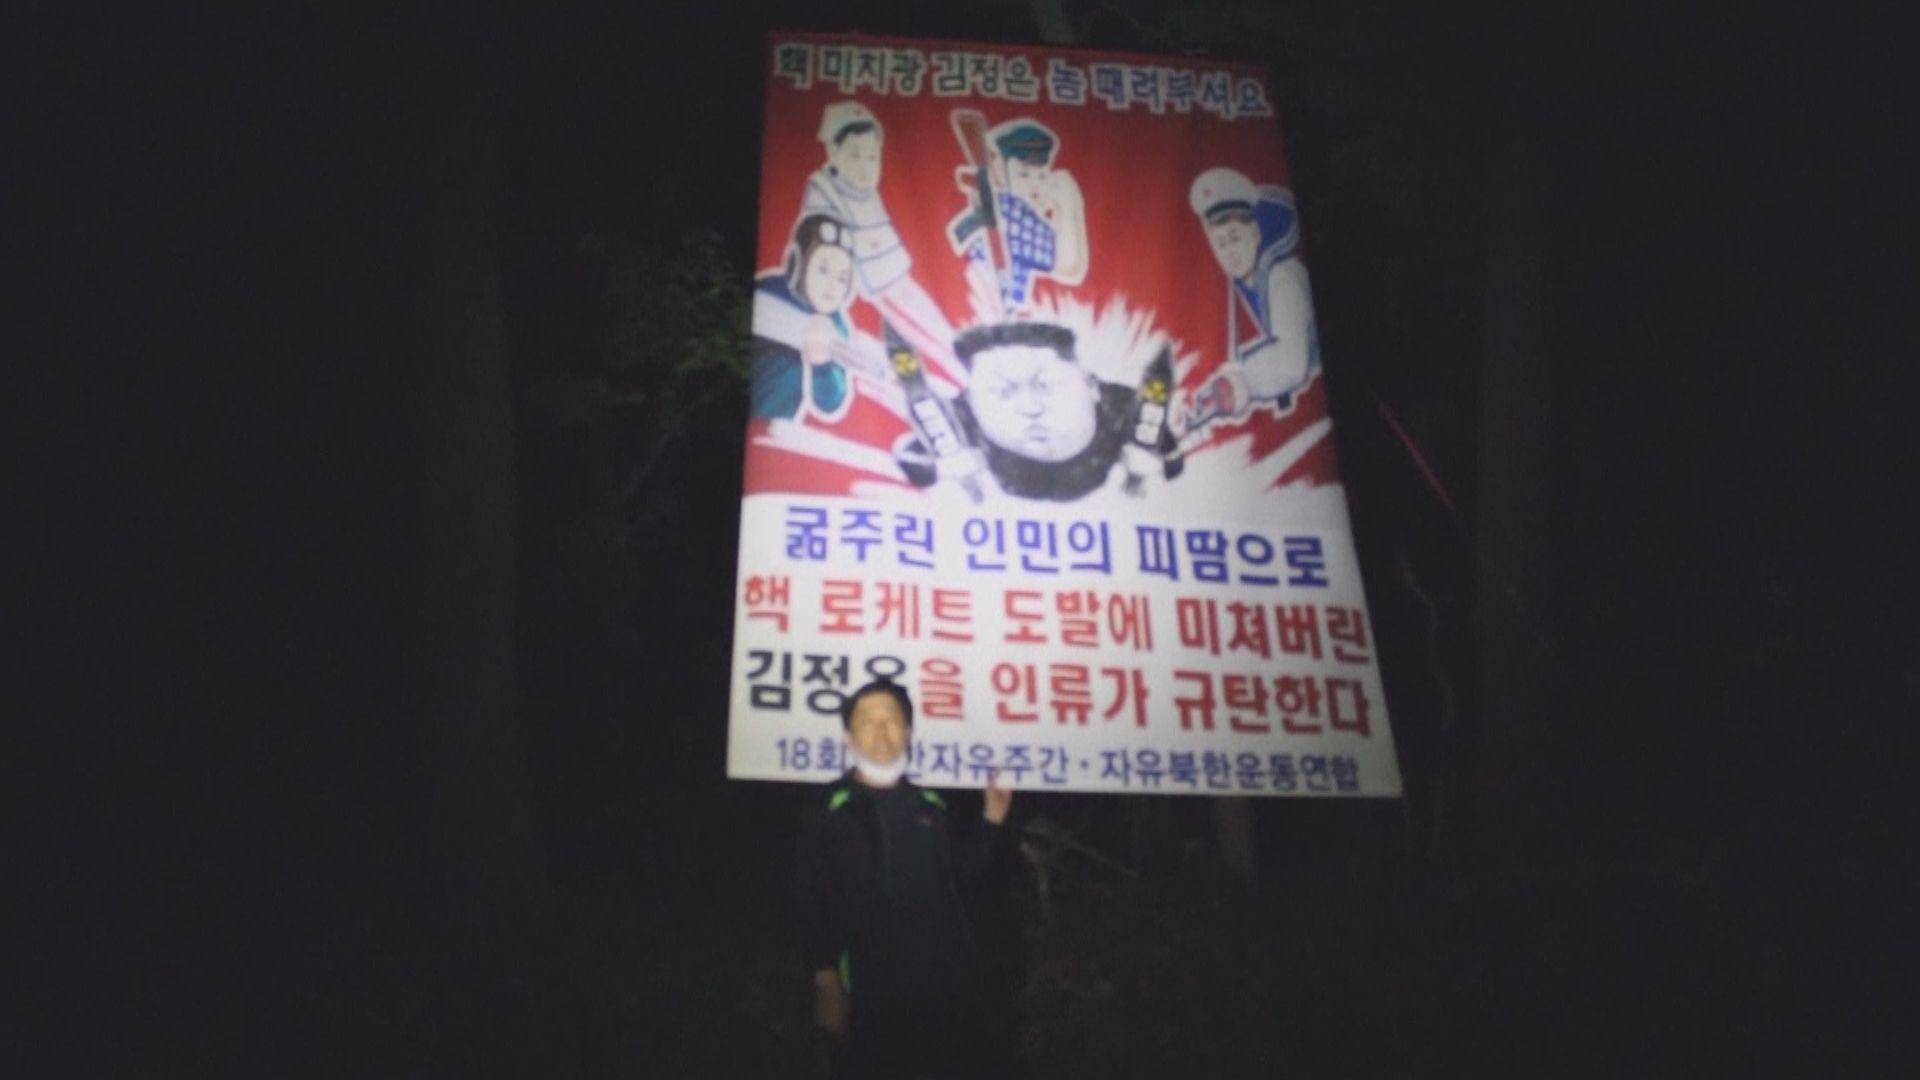 南韓反對任何製造朝鮮半島緊張局勢行為